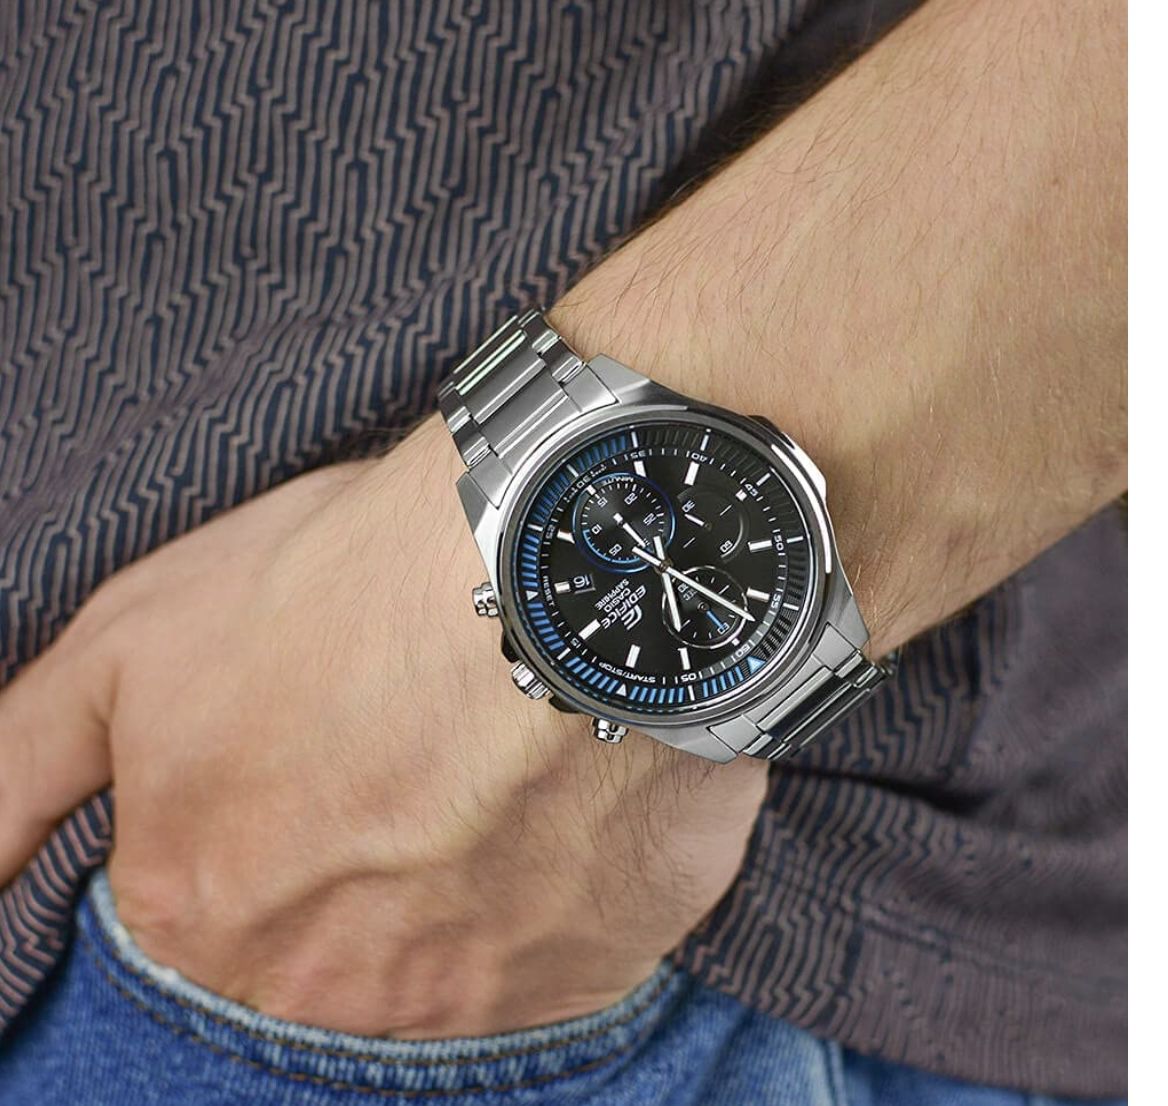 Casio Unisex Erwachsene Chronograph Quartz Uhr mit Edelstahl Armband für 87,10€ (statt 100€)